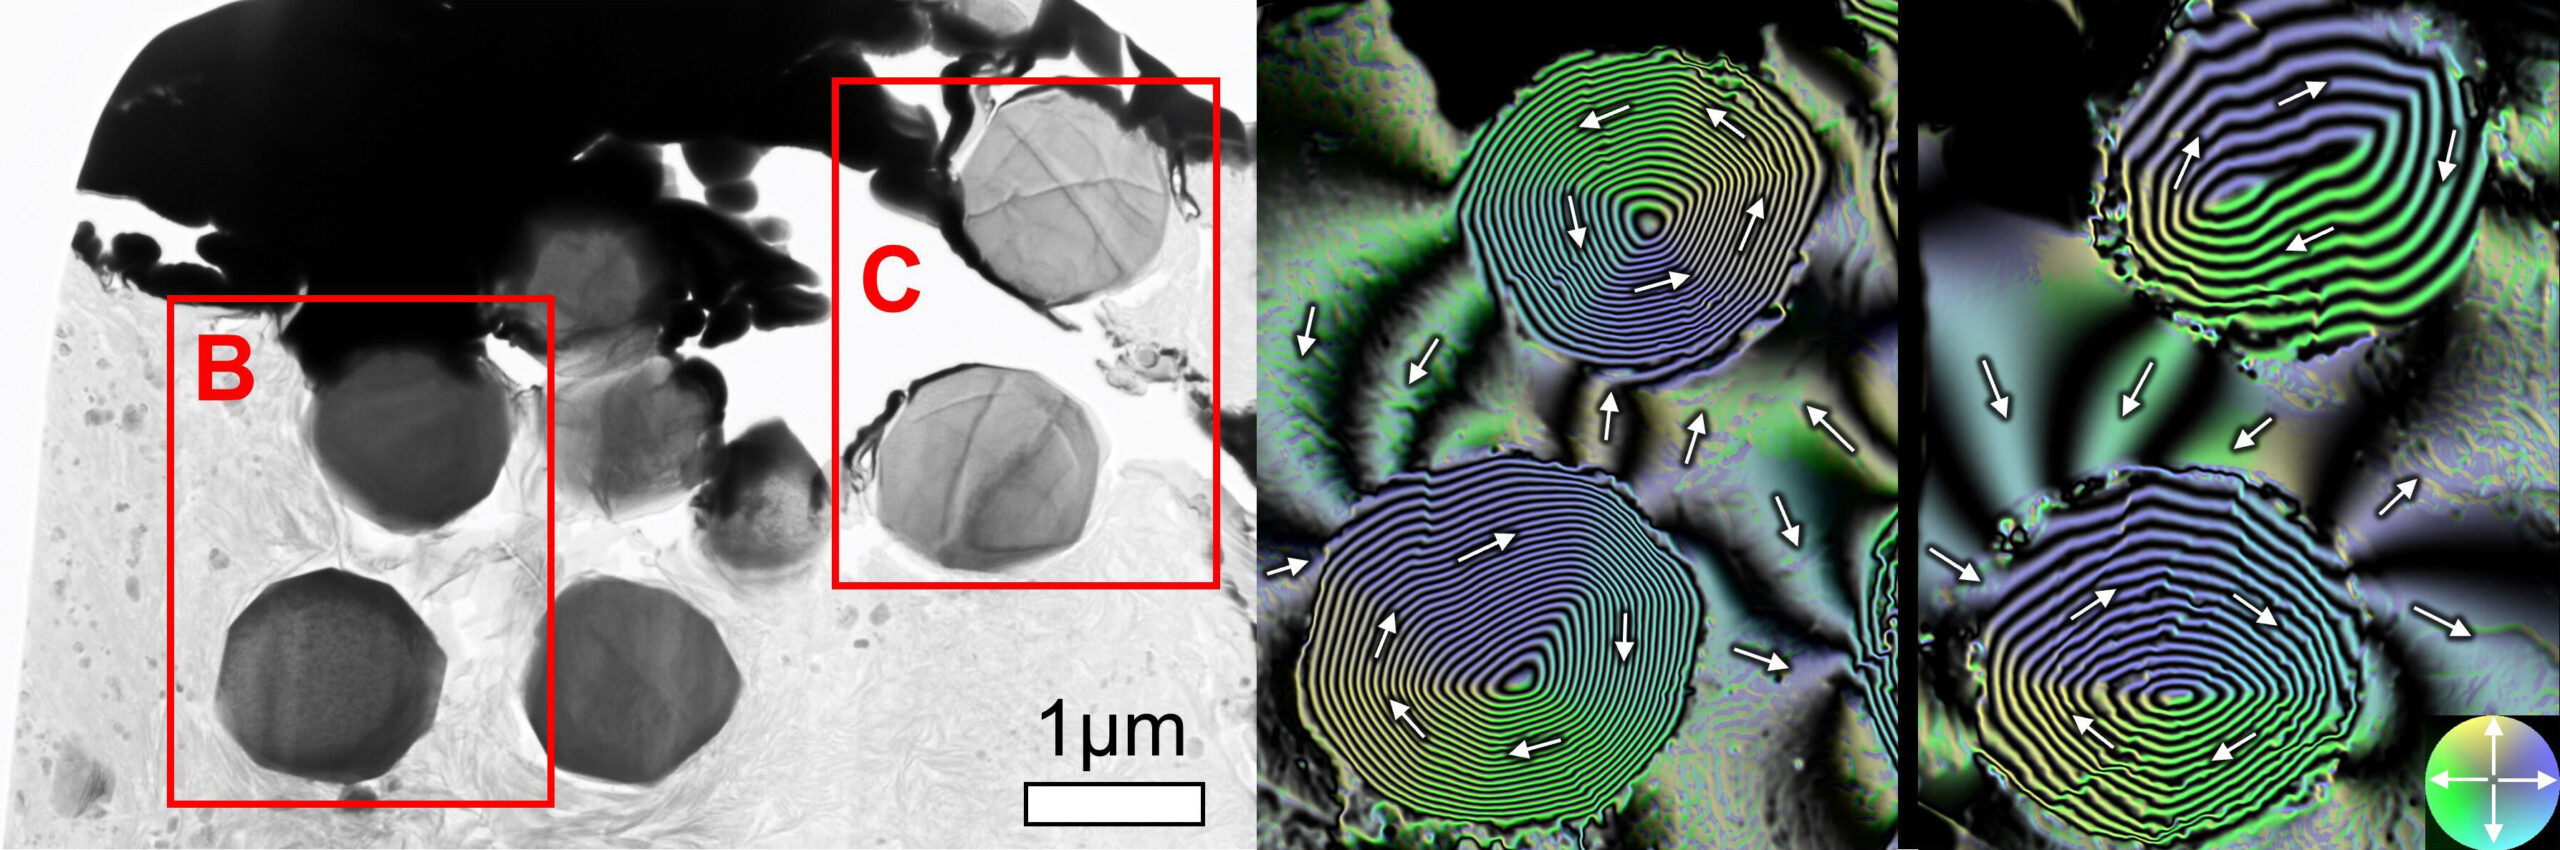 刻在球形磁铁矿 (Fe3O4) 晶体中的古地磁记录。 从Ryugu样品中提取的磁铁矿的透射电子显微镜图像（A）和通过电子全息术获得的磁通量分布图像（B，C）。 箭头和颜色表示磁化方向。 在颗粒内部看到的同心条纹表明磁场线沿箭头方向缠绕（称为螺旋磁畴结构）。 在粒子外部看到的磁场线是来自粒子的杂散磁场，反映了当琉球母体内部变暖并发生水和矿物质之间的反应时琉球的磁环境